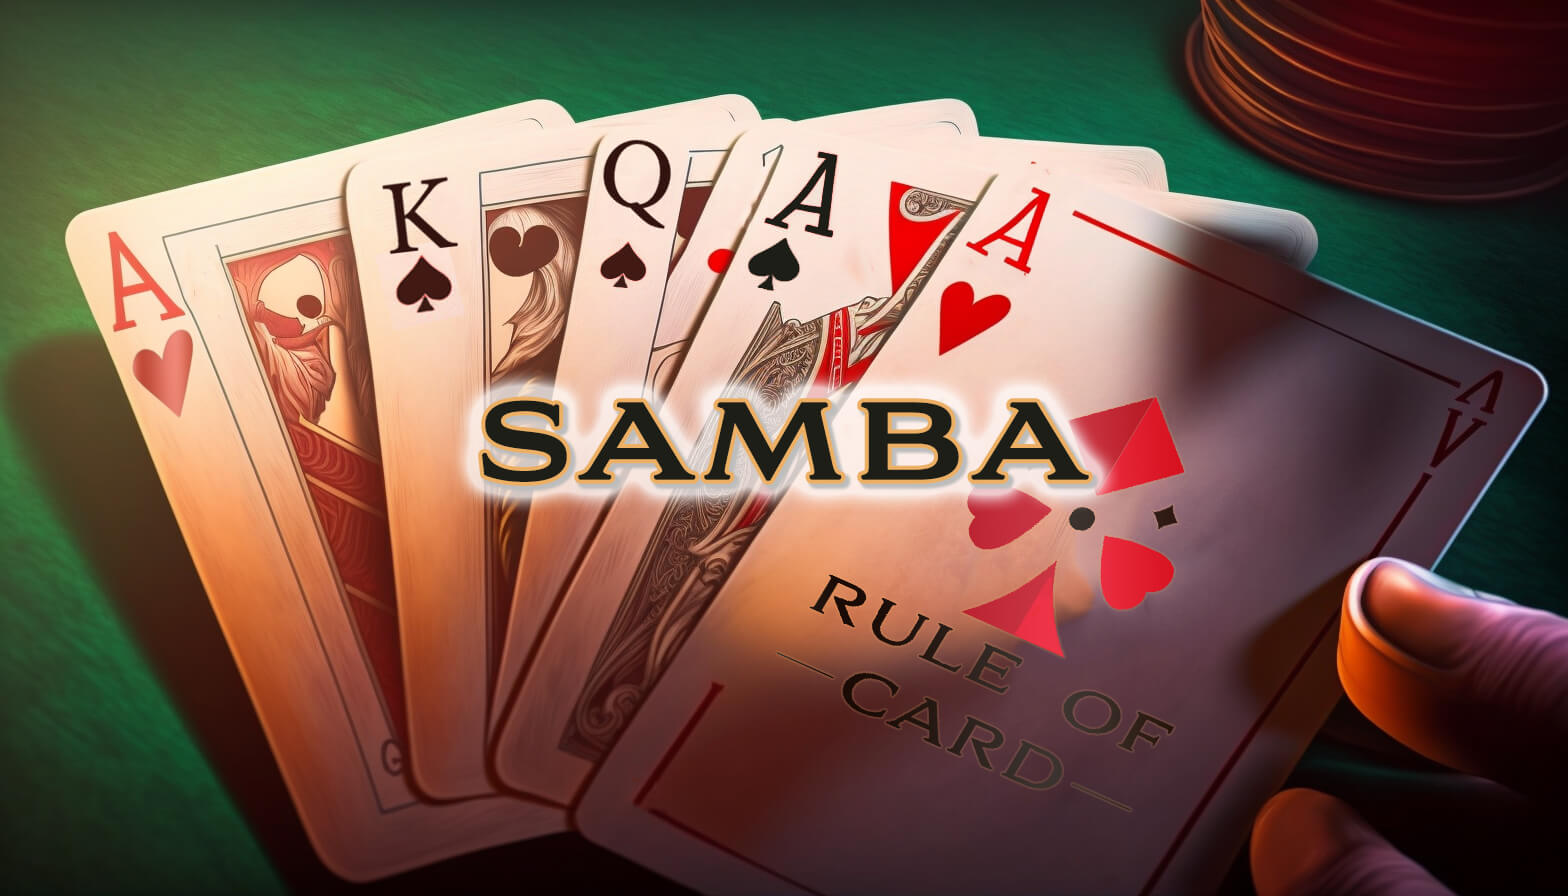 Playing the card game Samba